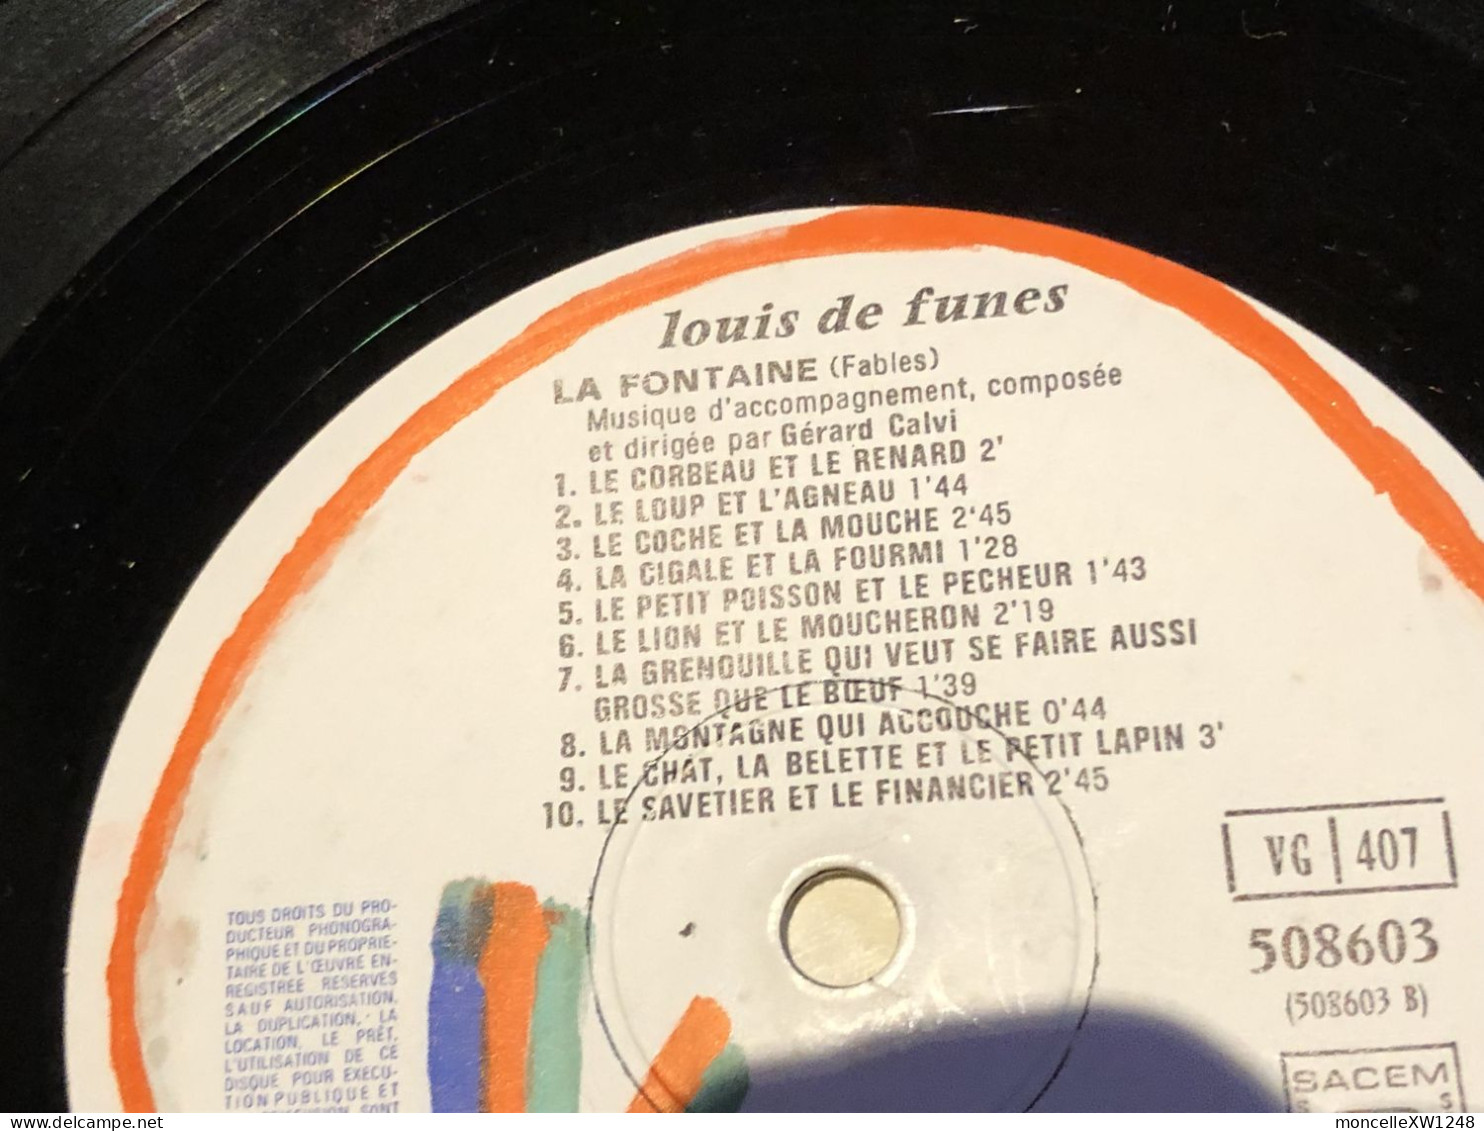 Louis De Funès - 33 T LP Molière La Fontaine (1980) - Innendekoration